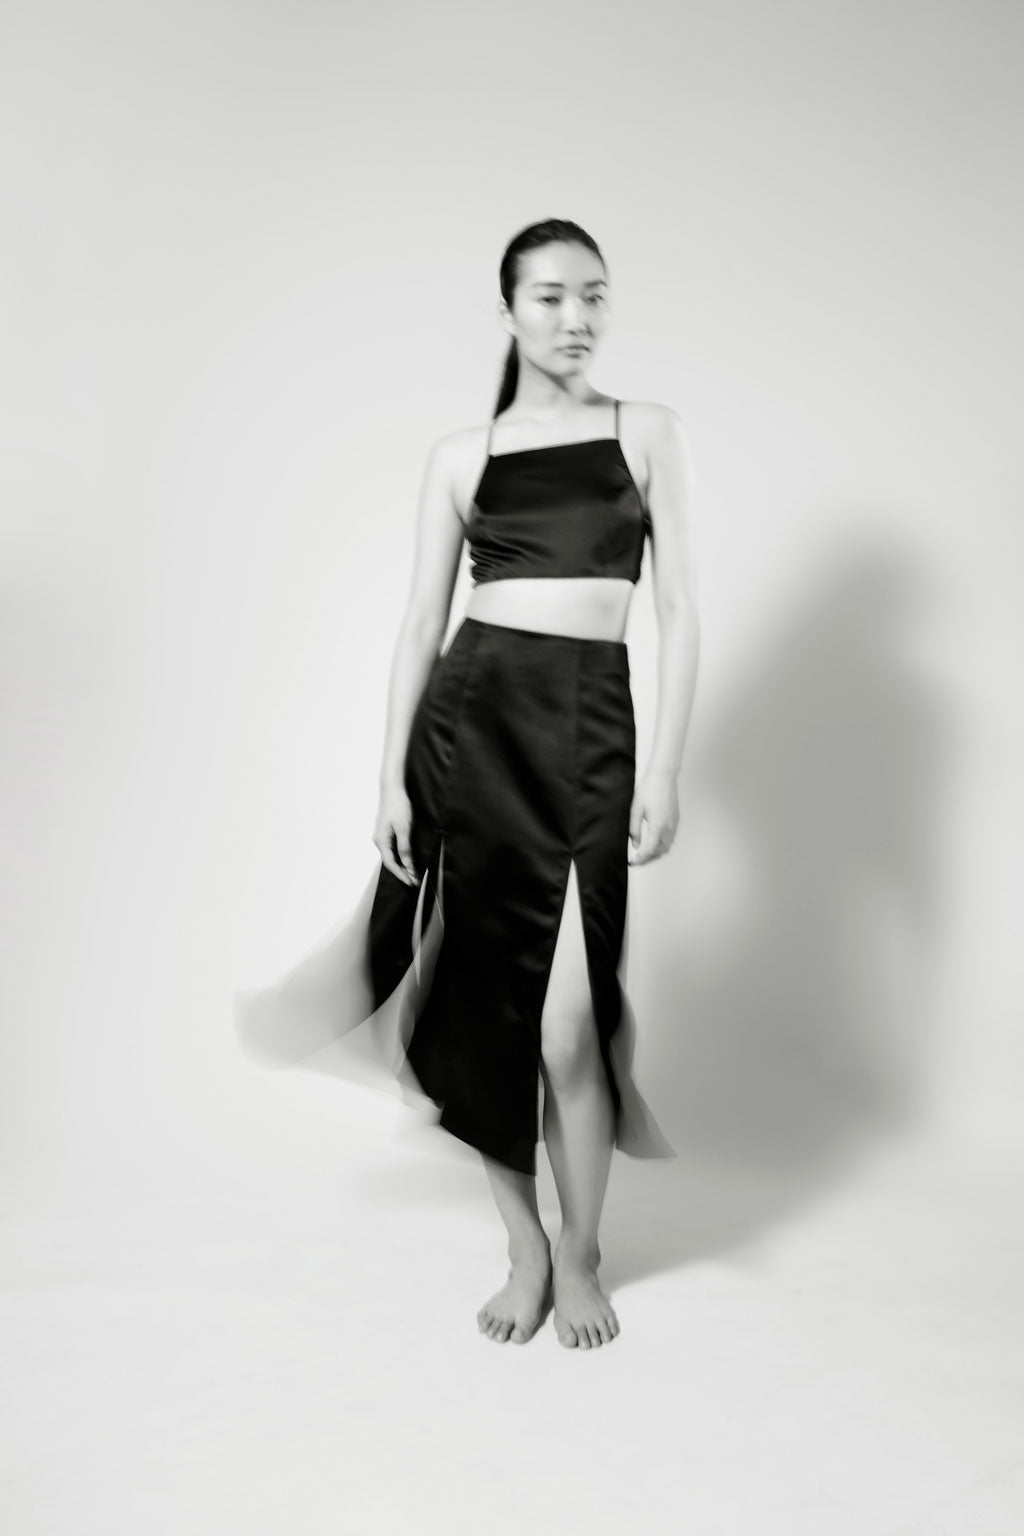 PRAE Luxury Lingerie Designer Silk Bralettes, About - Helene black silk bralette with Wells multi-slit skirt